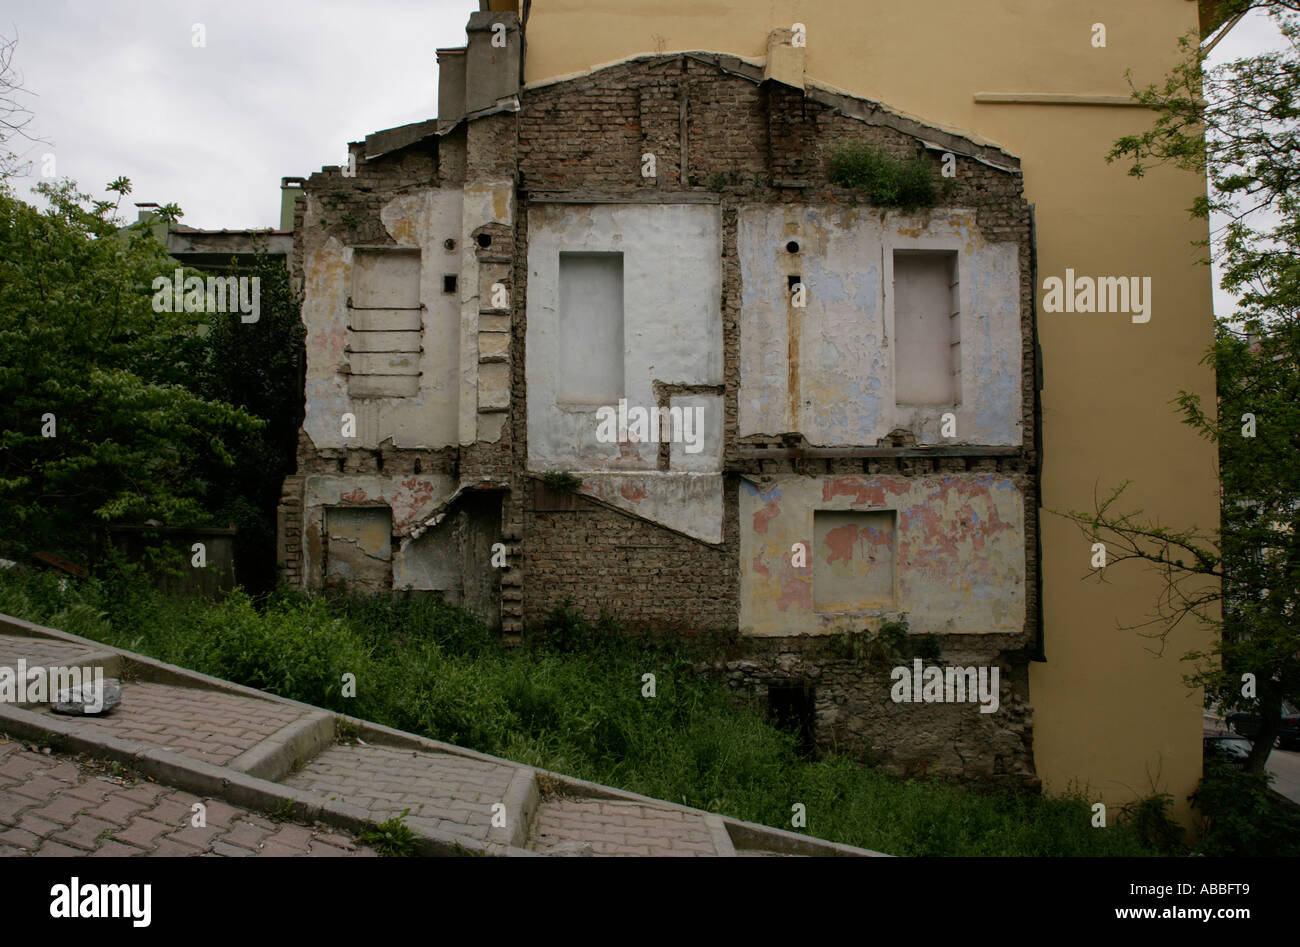 SIDE OF DEMOLISHED HOUSE, TURKEY Stock Photo